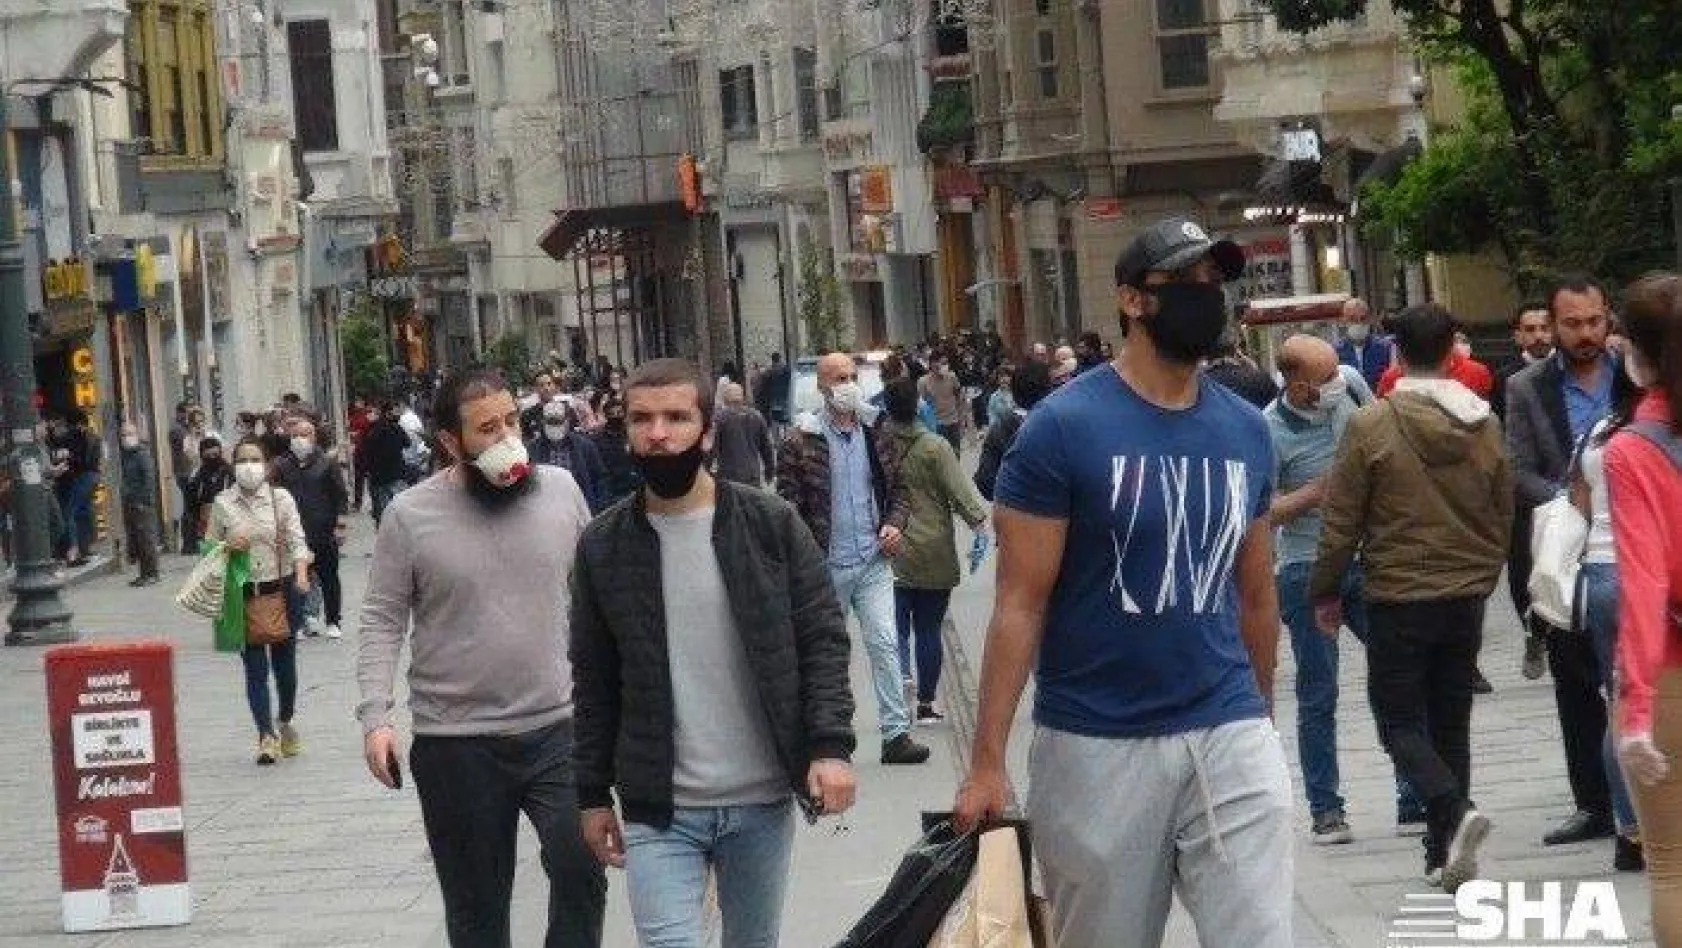 Taksim Meydanı ve İstiklal Caddesi'nde dikkat çeken yoğunluk